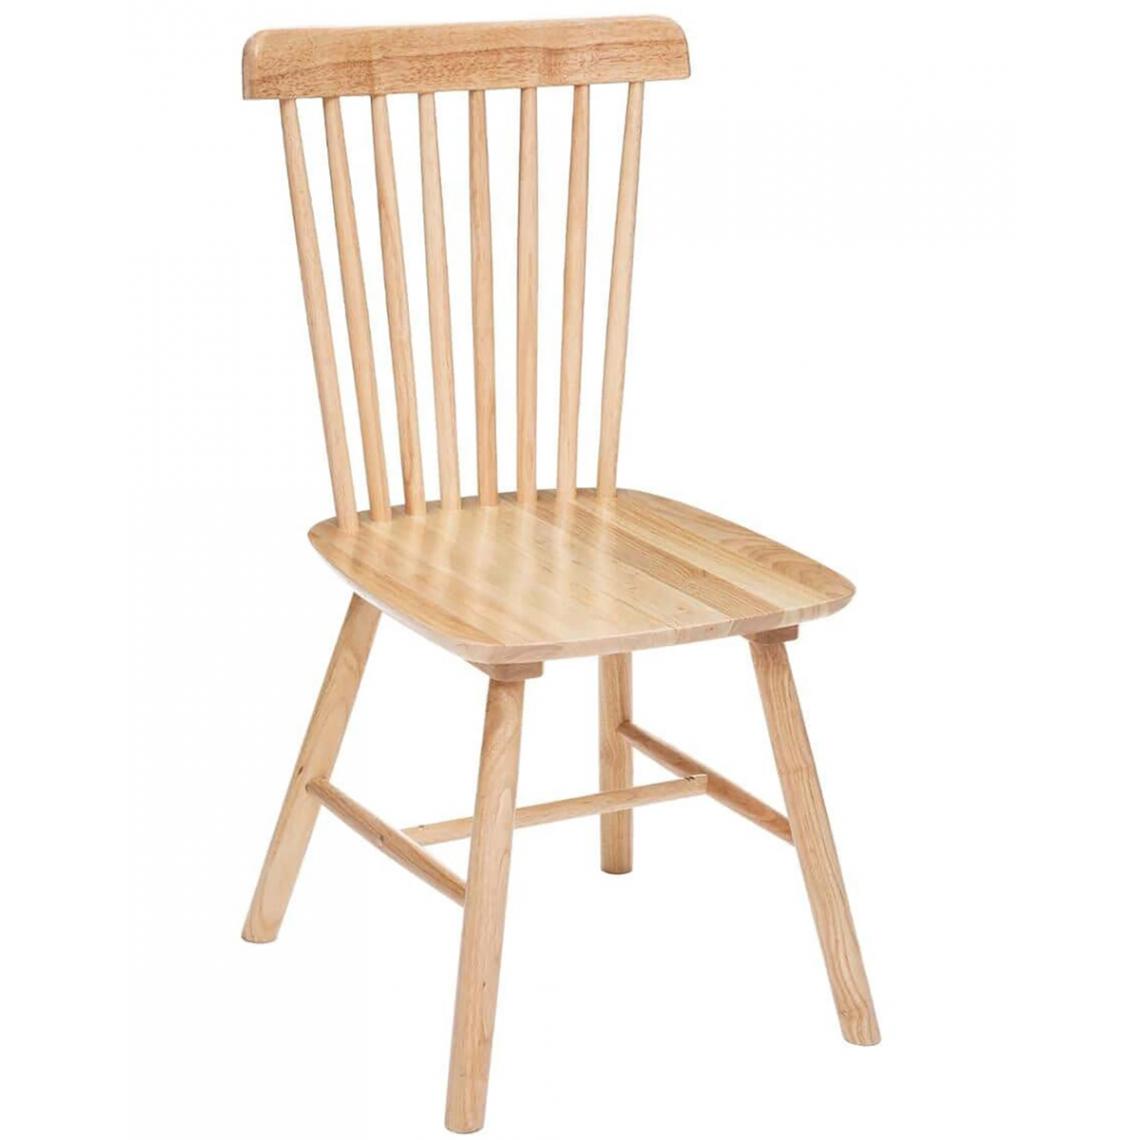 Pegane - Lot de 2 chaises en bois hévéa coloris beige - Longueur 46,5 x Profondeur 52 x Hauteur 87 cm - Chaises